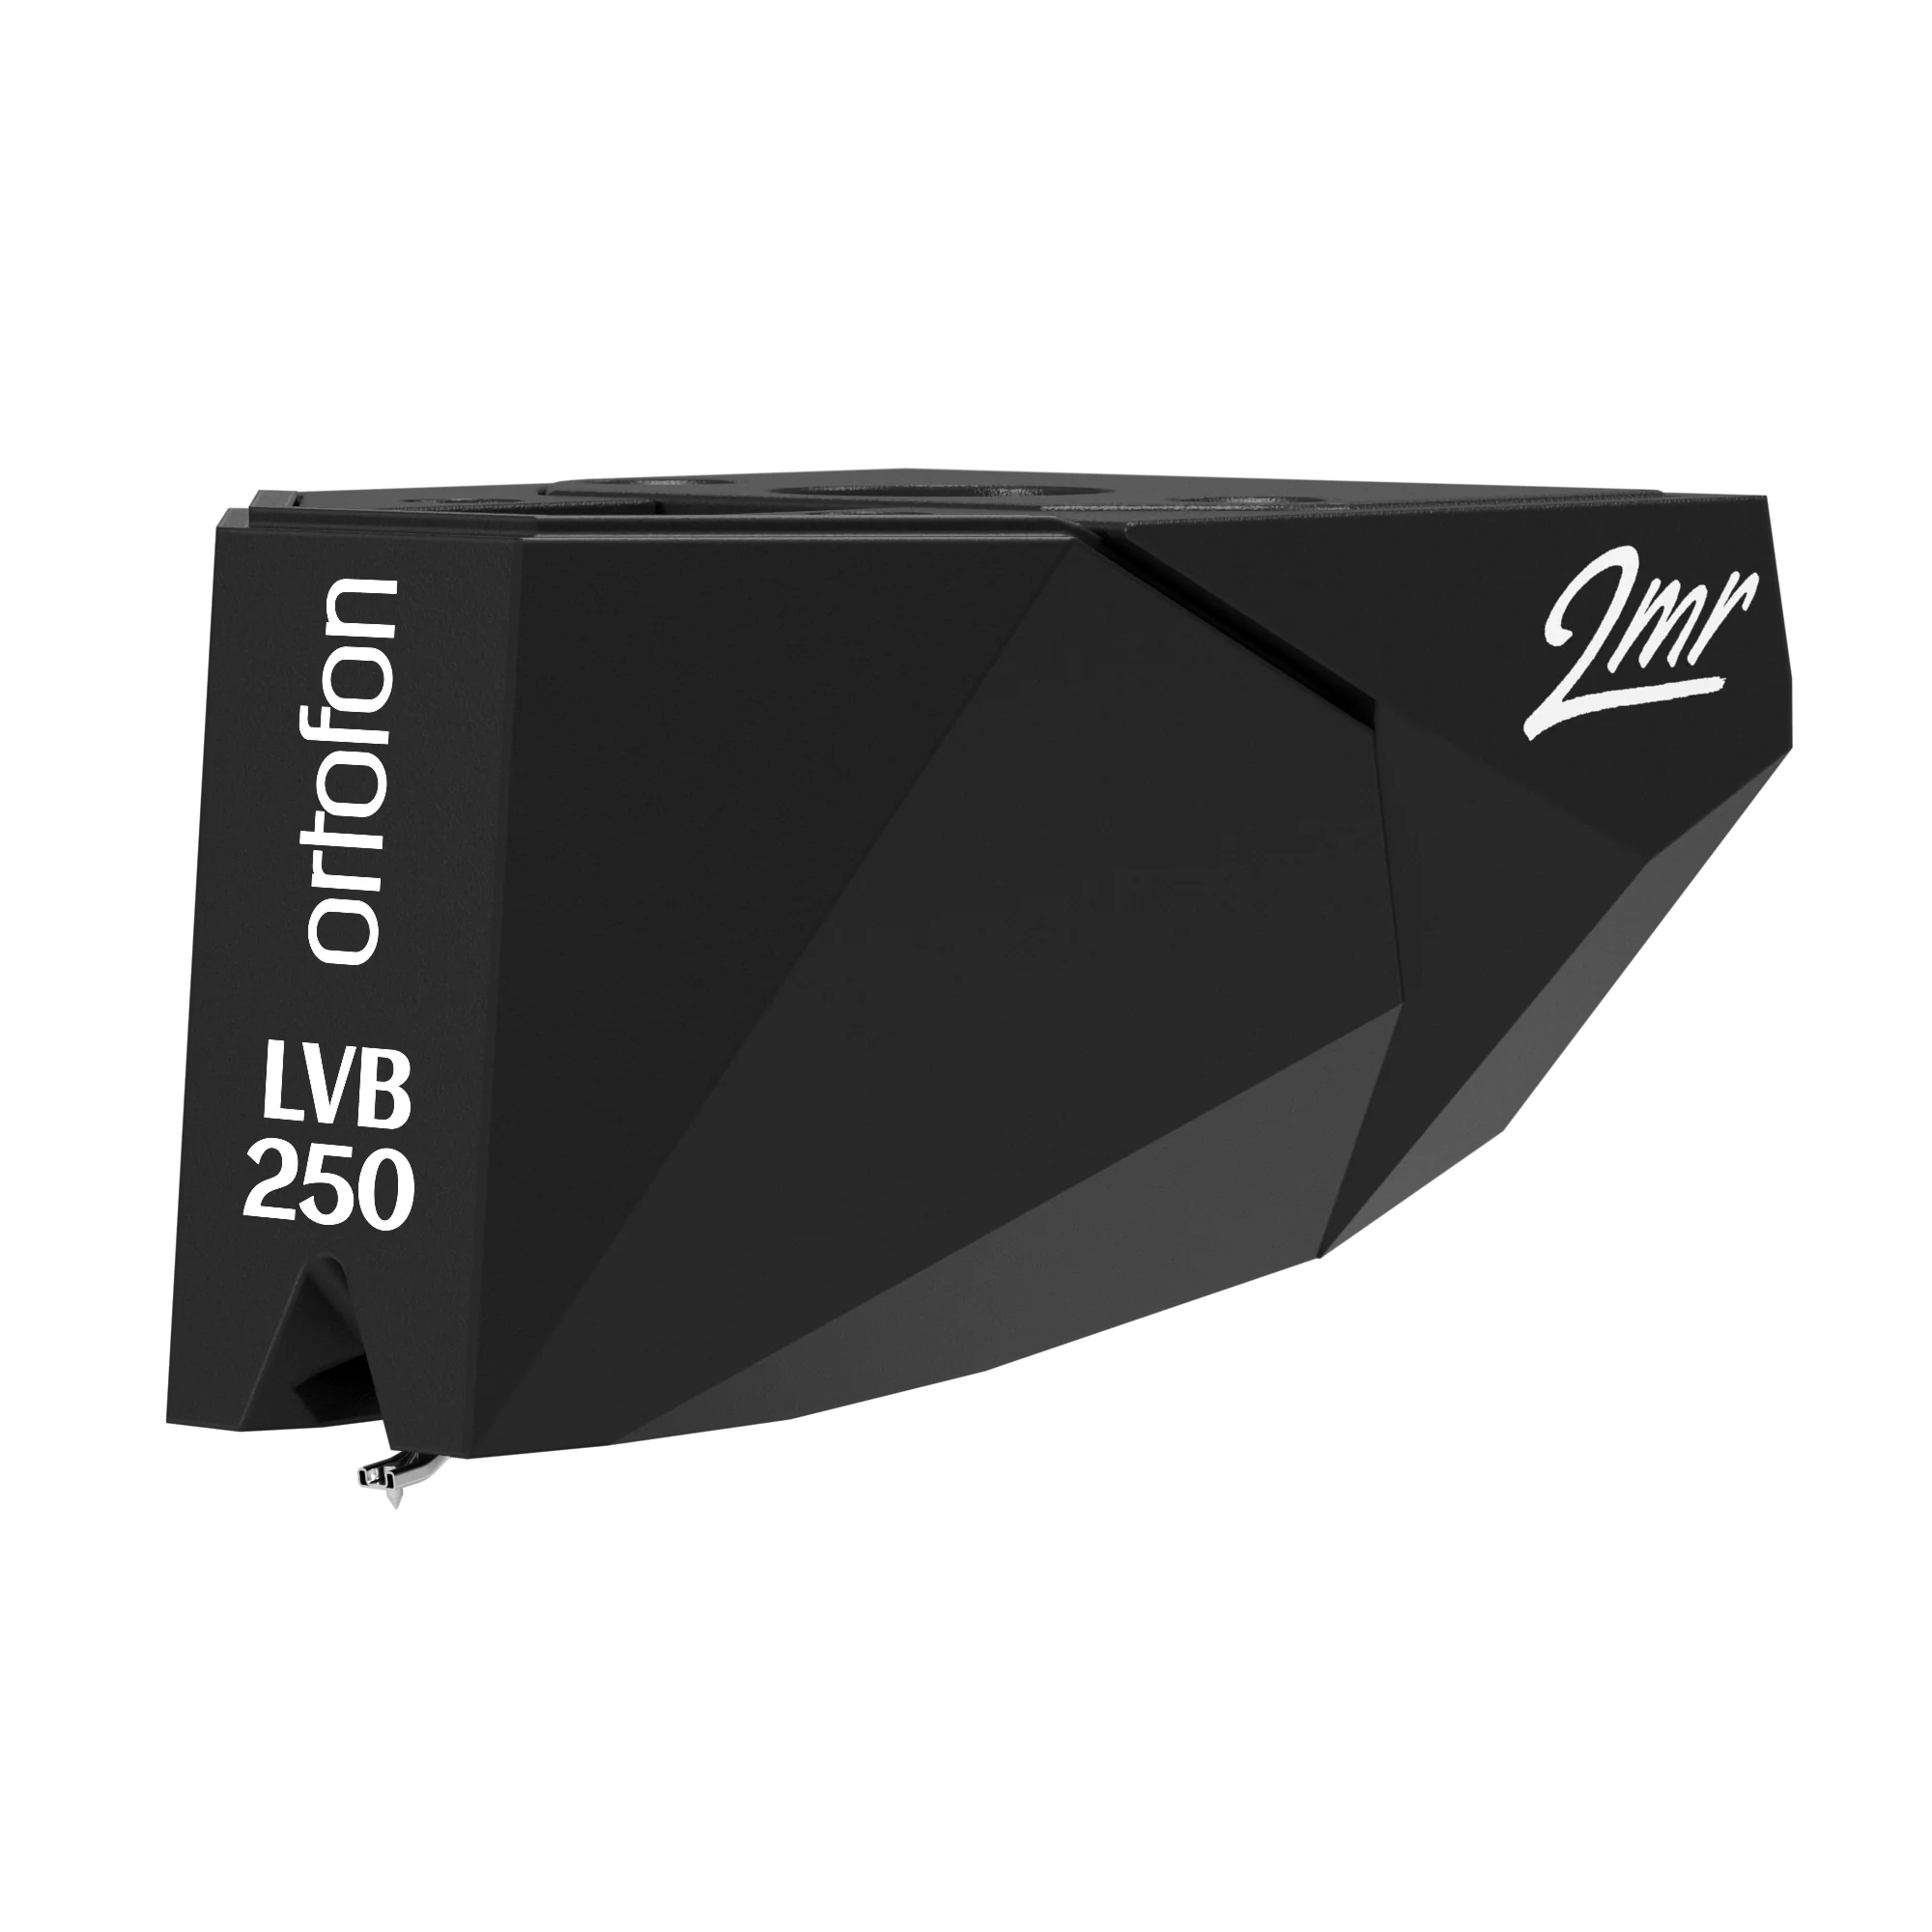 2MR Black LVB 250 (for Rega turntables)